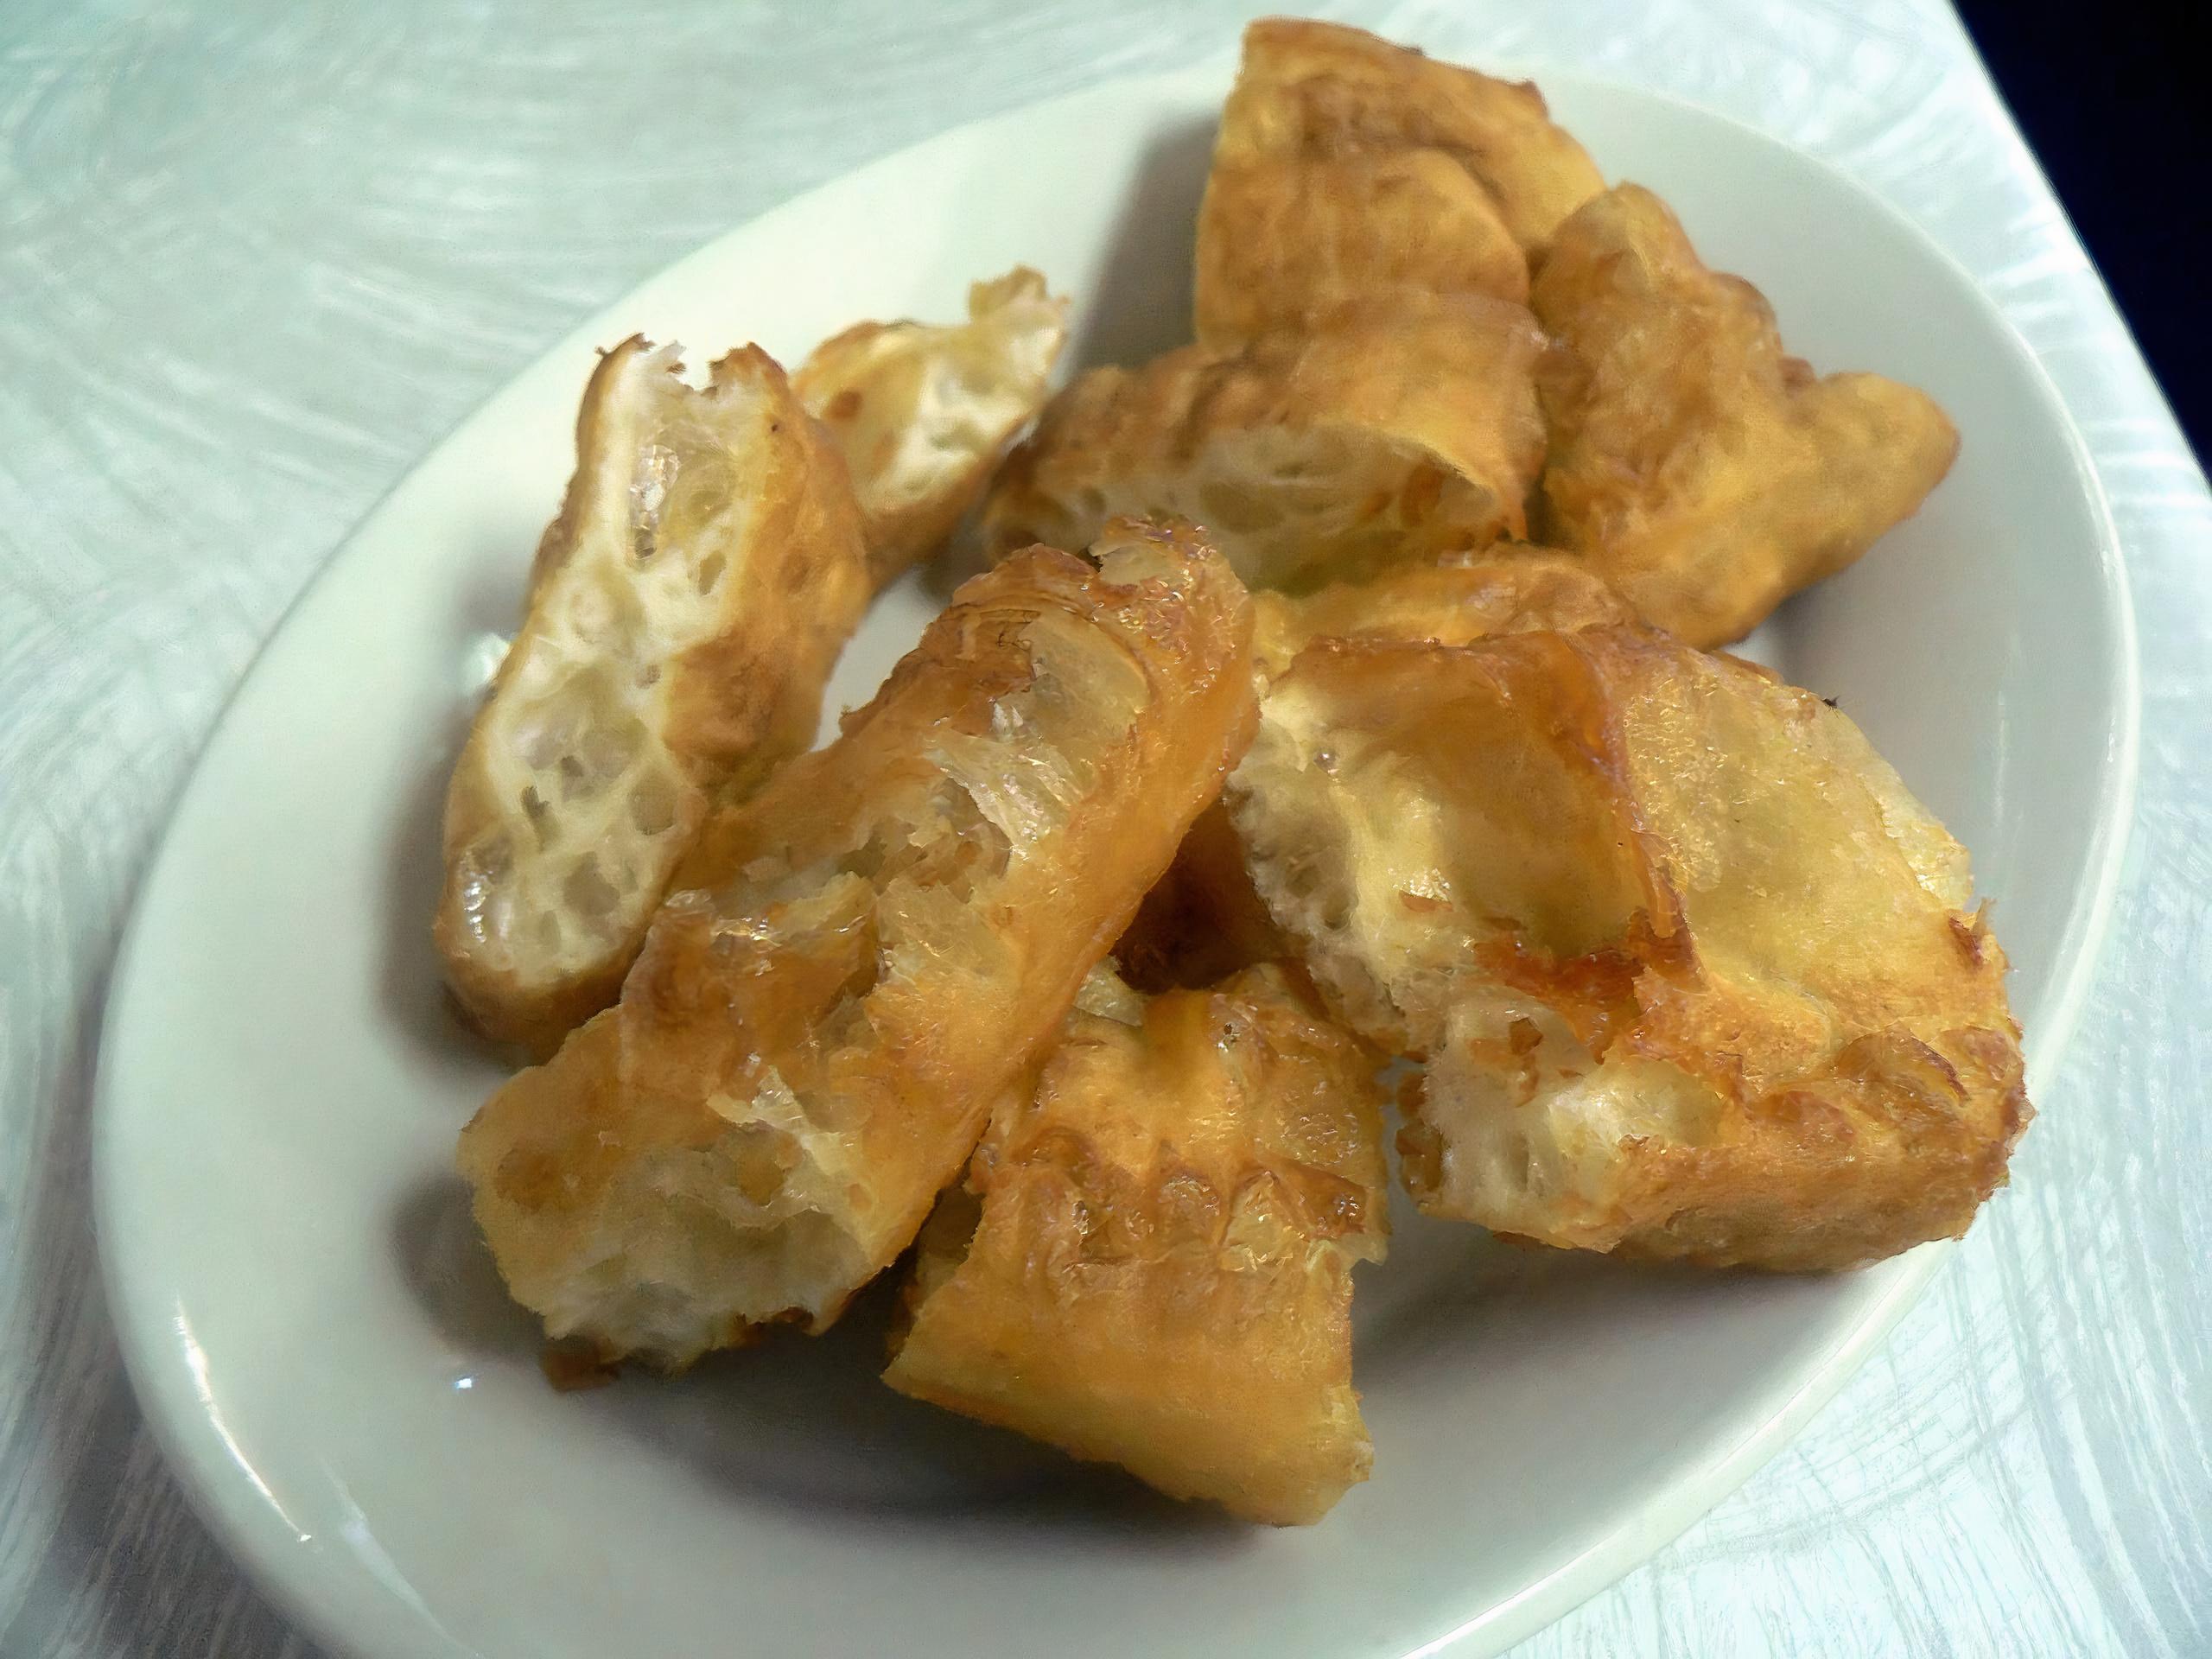 Los youtiao son muy populares en los desayunos del sur de China, y su gran parecido con los churros apoya la teoría de que fueron introducidos en Europa por los portugueses.Fuente:Wikipedia / Stu Spivack